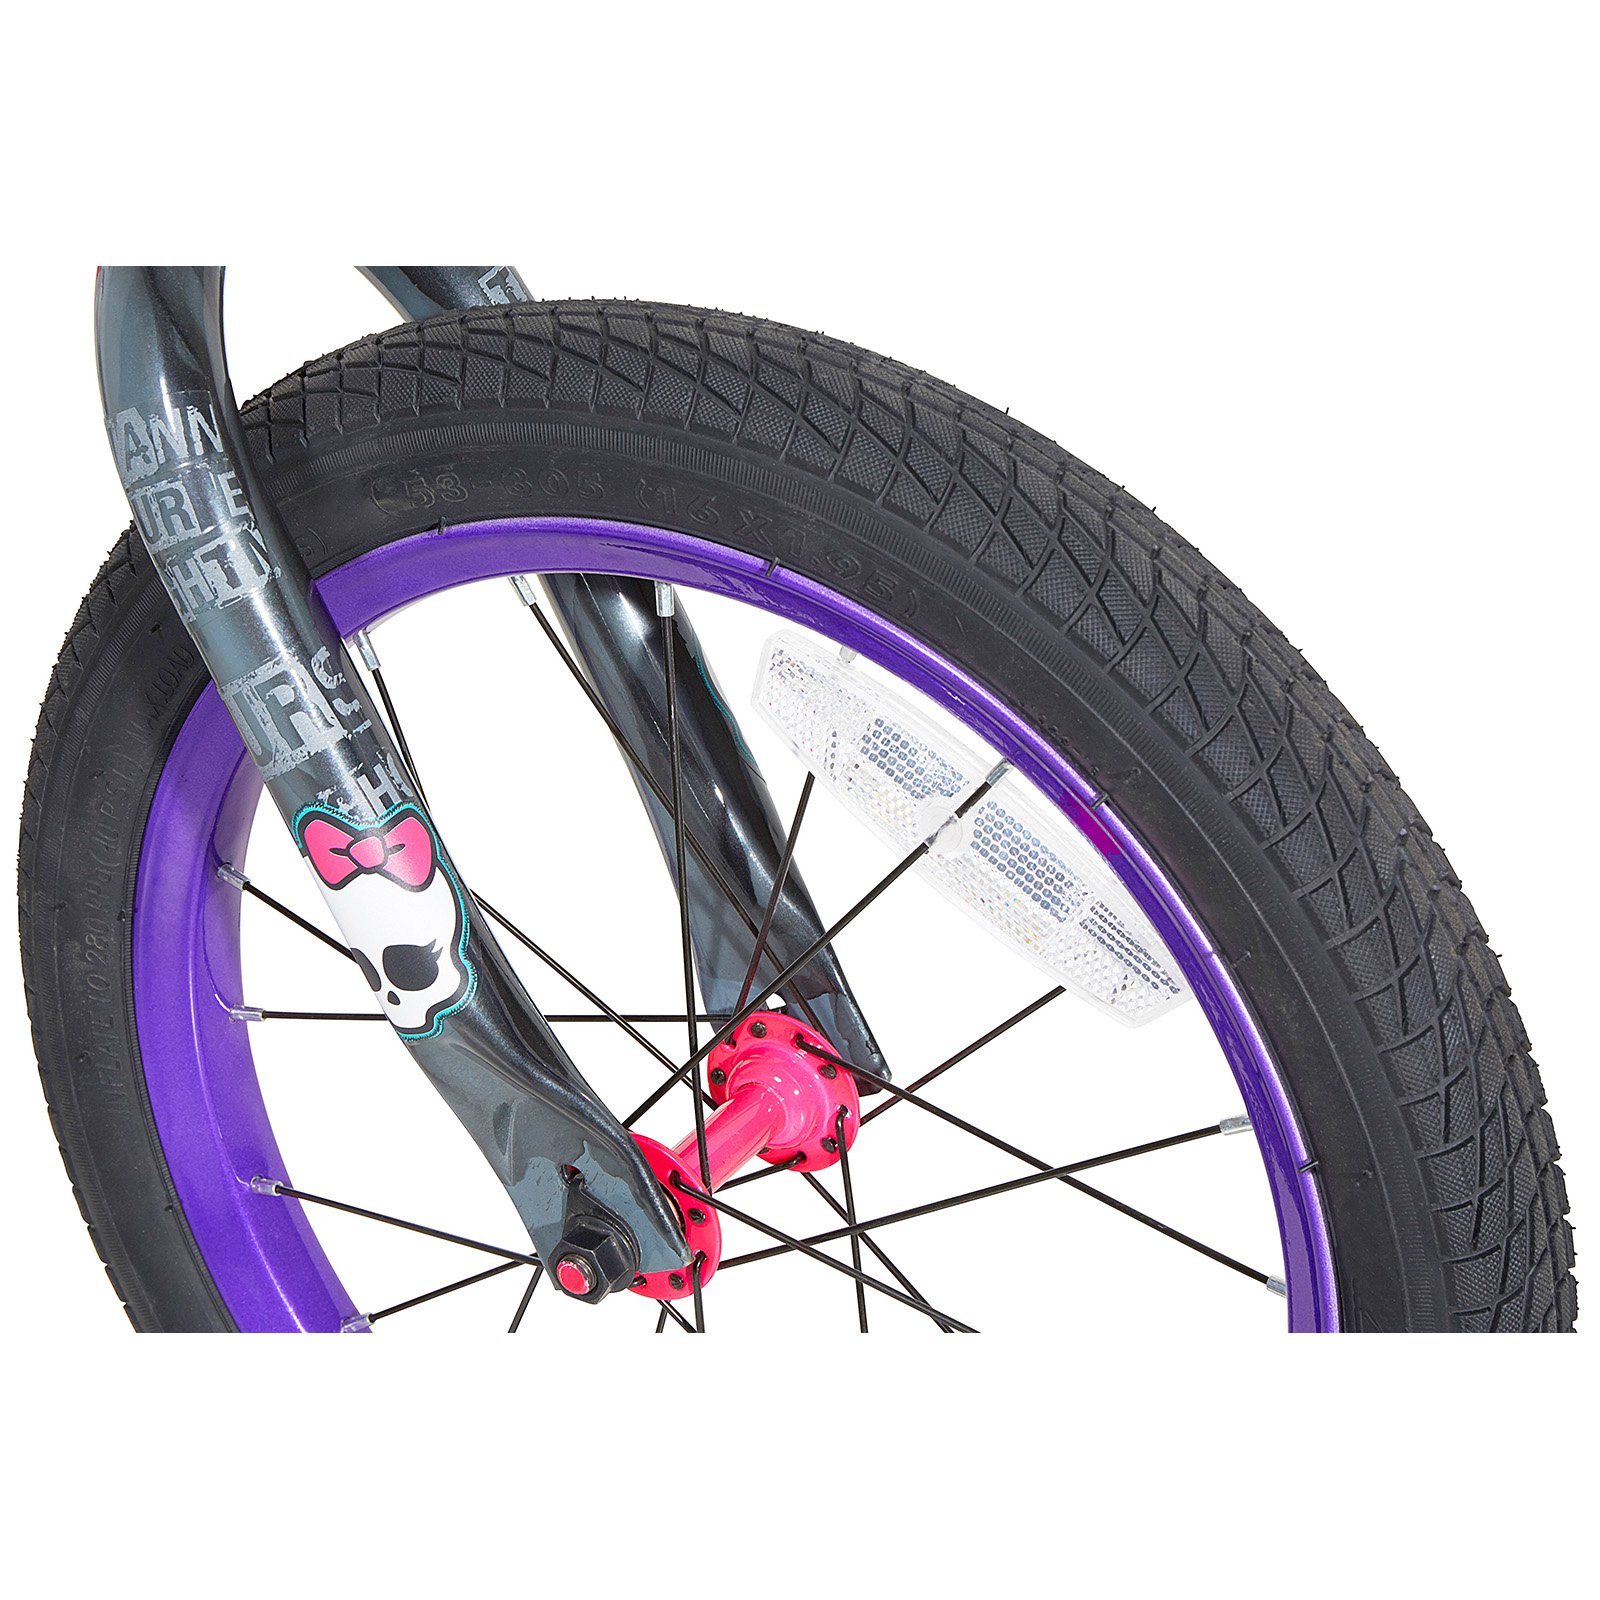 16" Girl's Monster High Bike - image 3 of 5